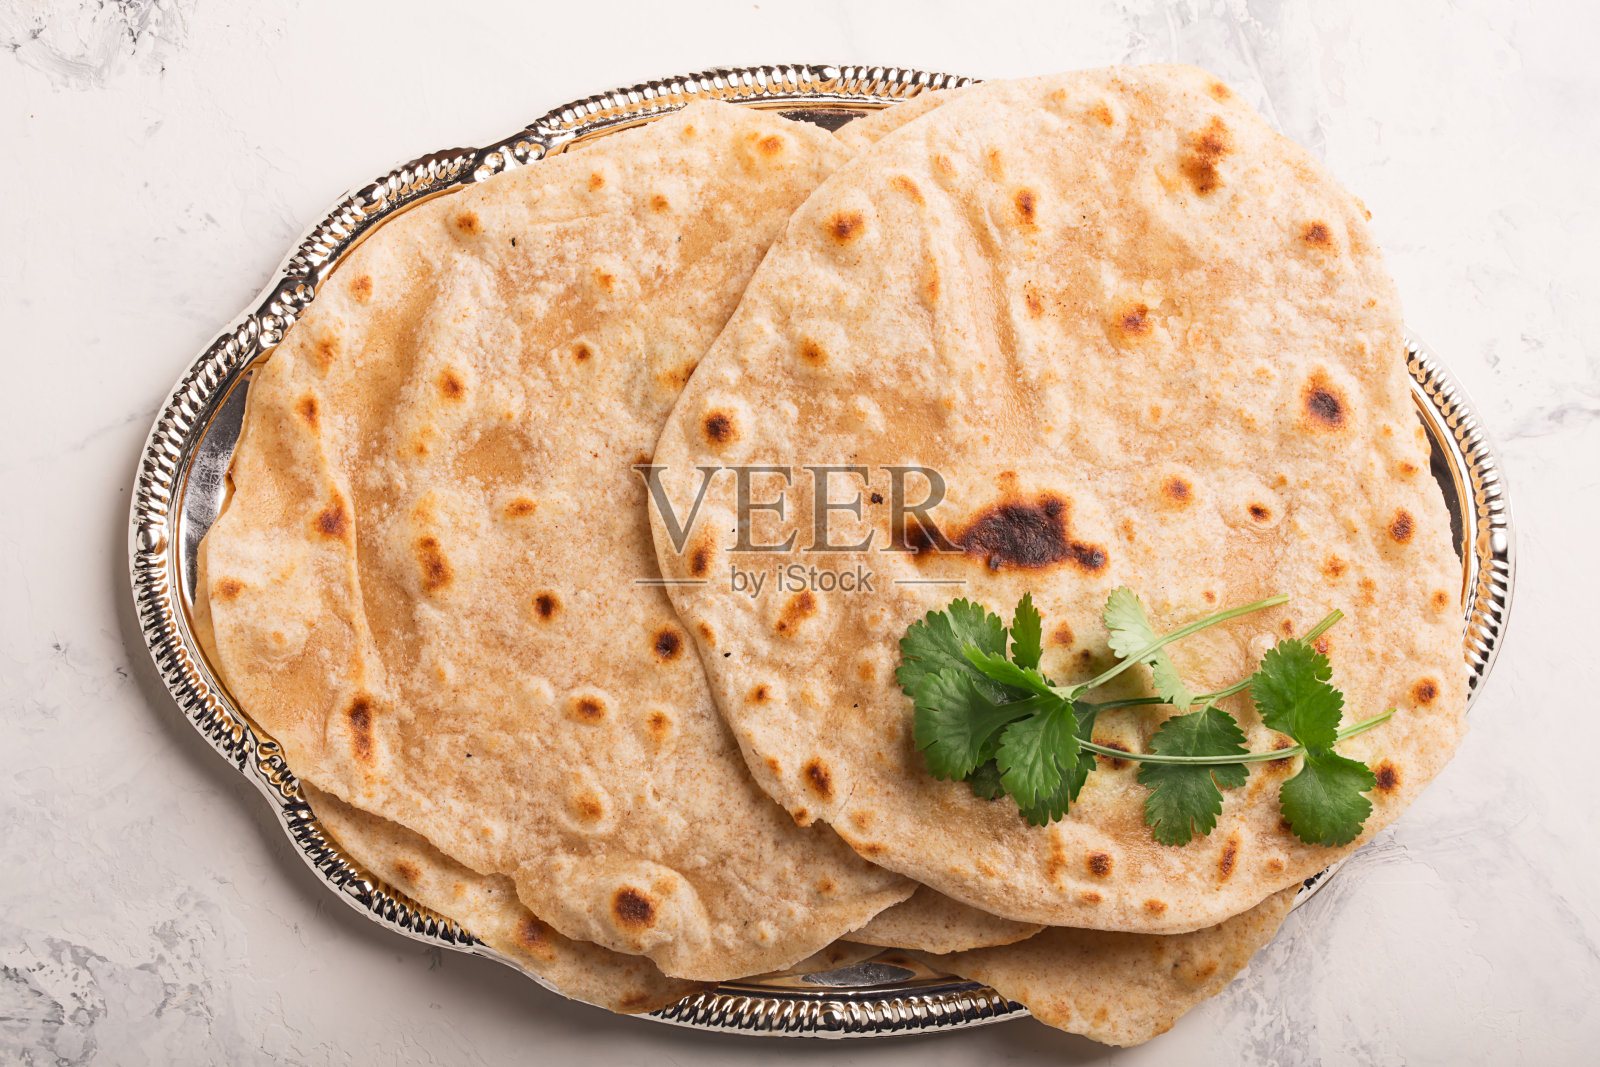 自制的chapati(印度面包)照片摄影图片